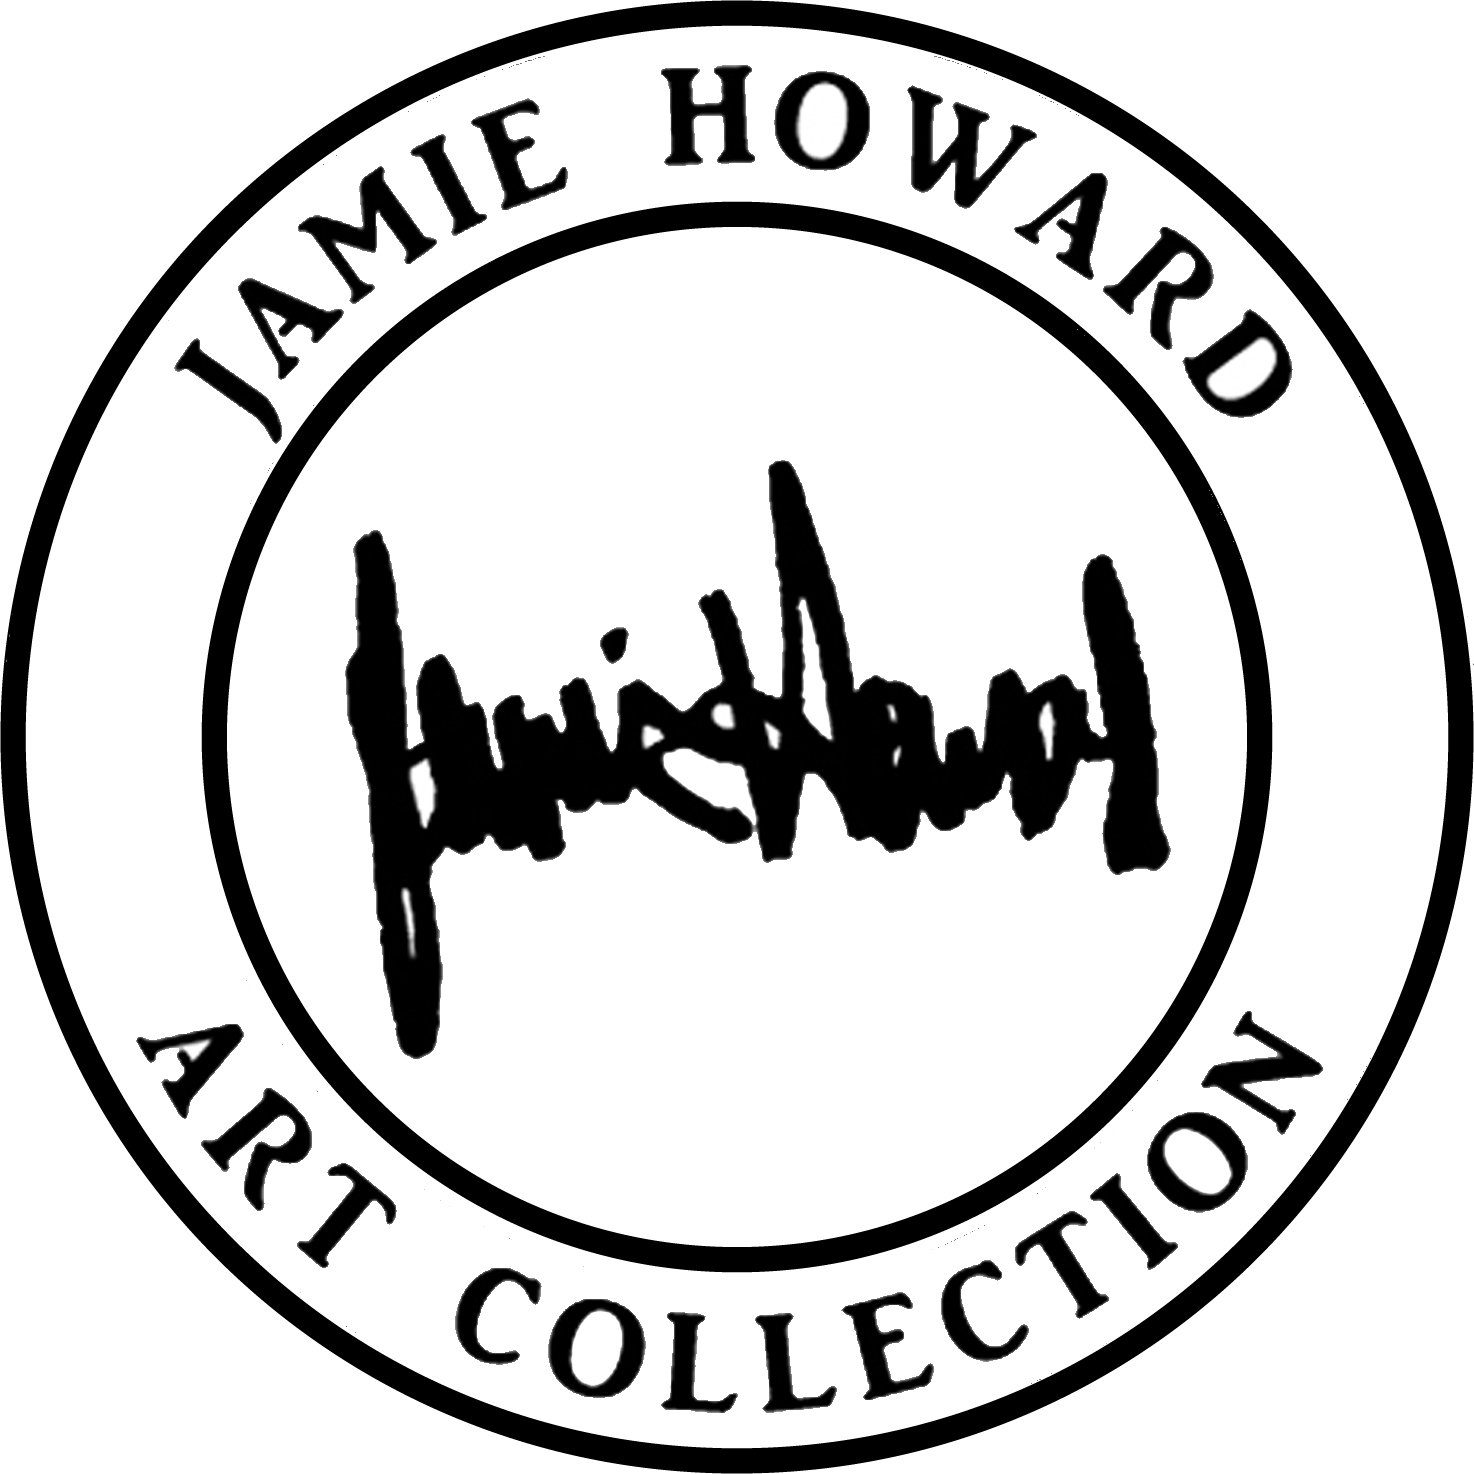 Jamie Howard